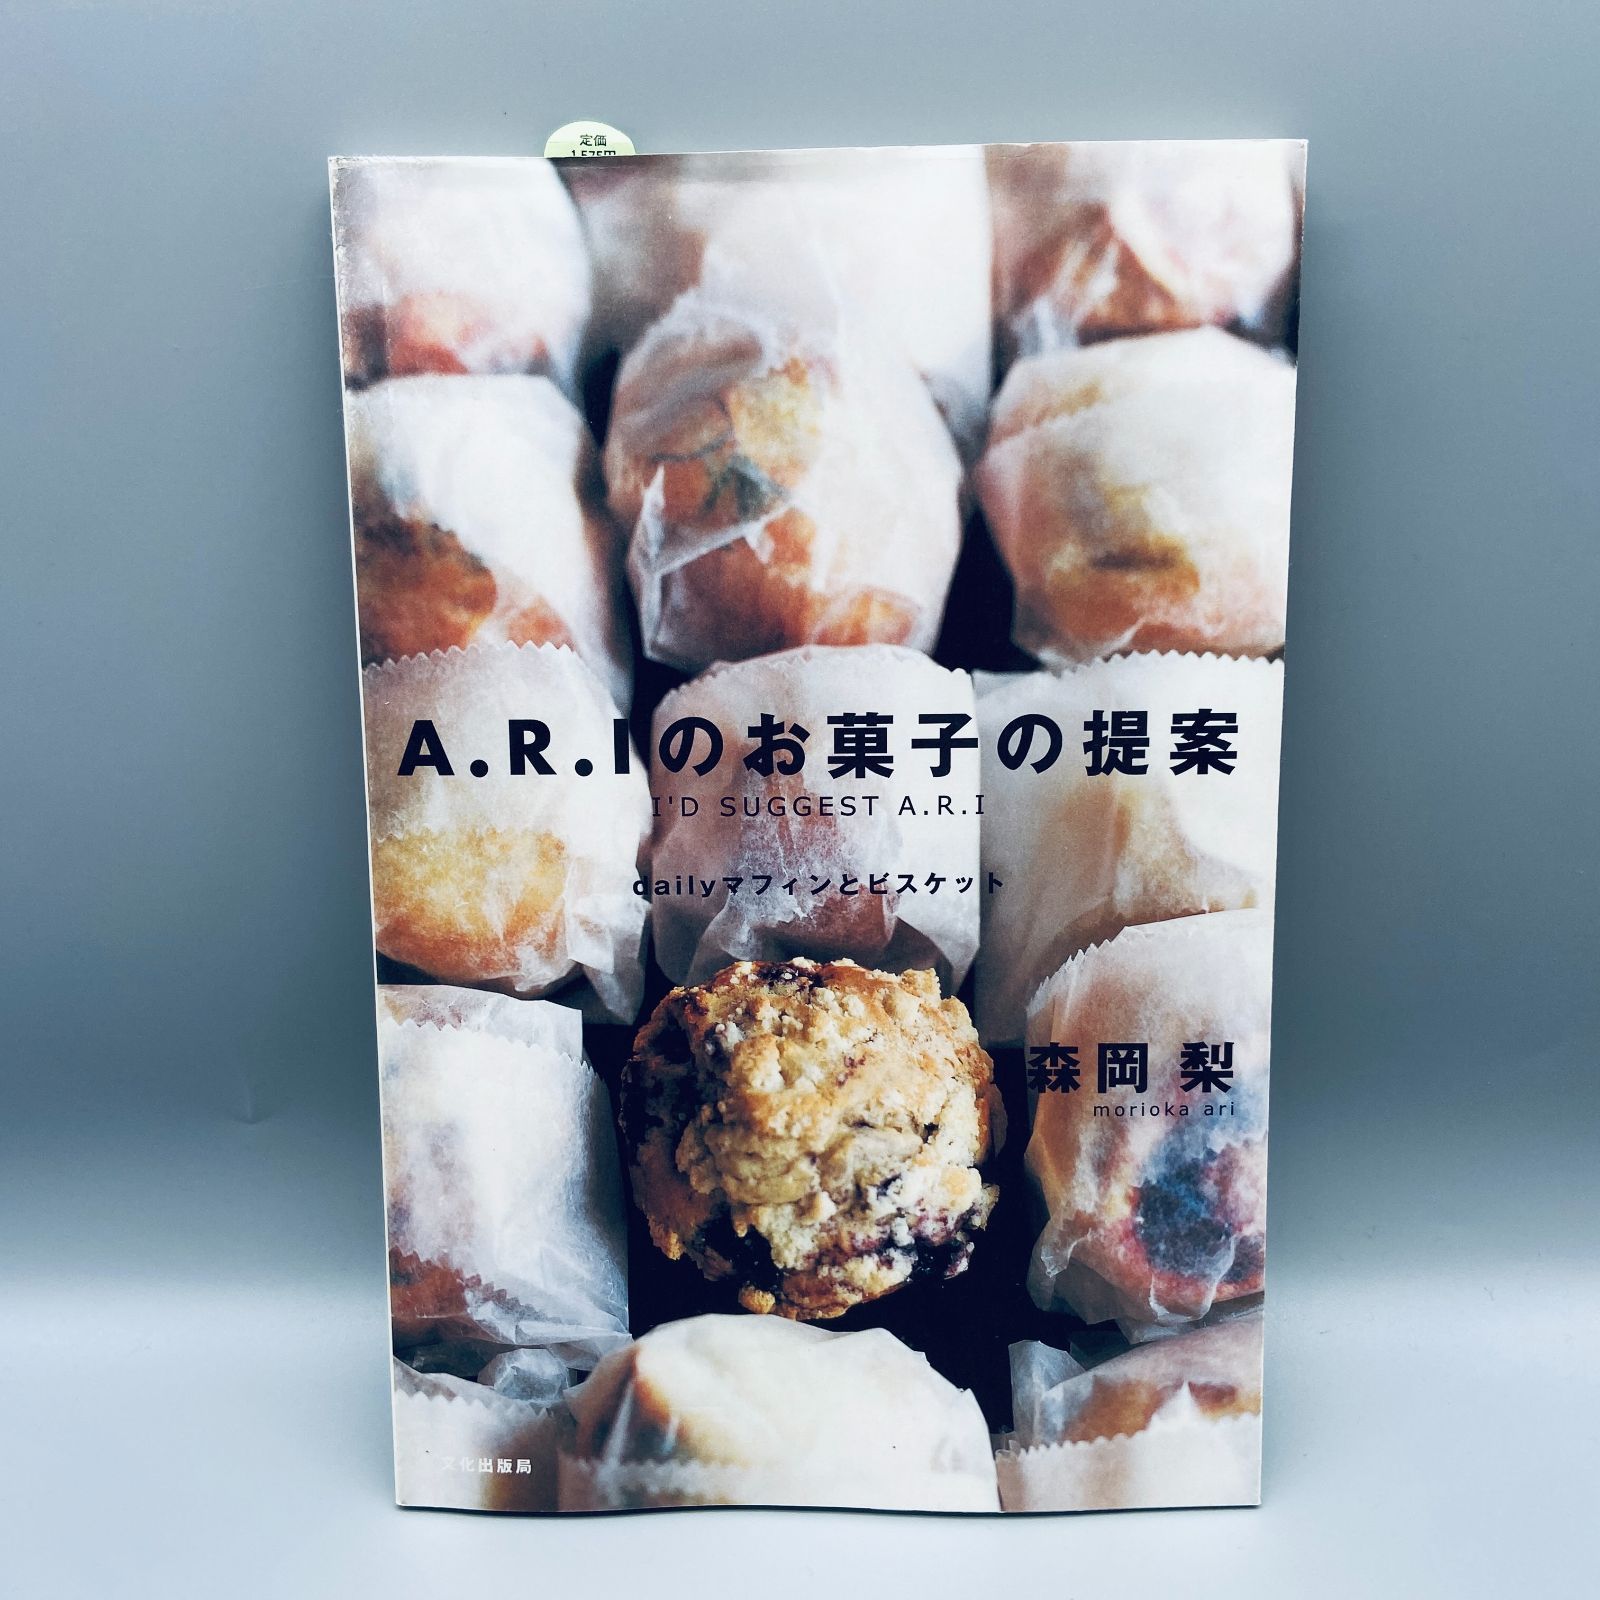 A.R.Iのお菓子の提案 : dailyマフィンとビスケット - メルカリ